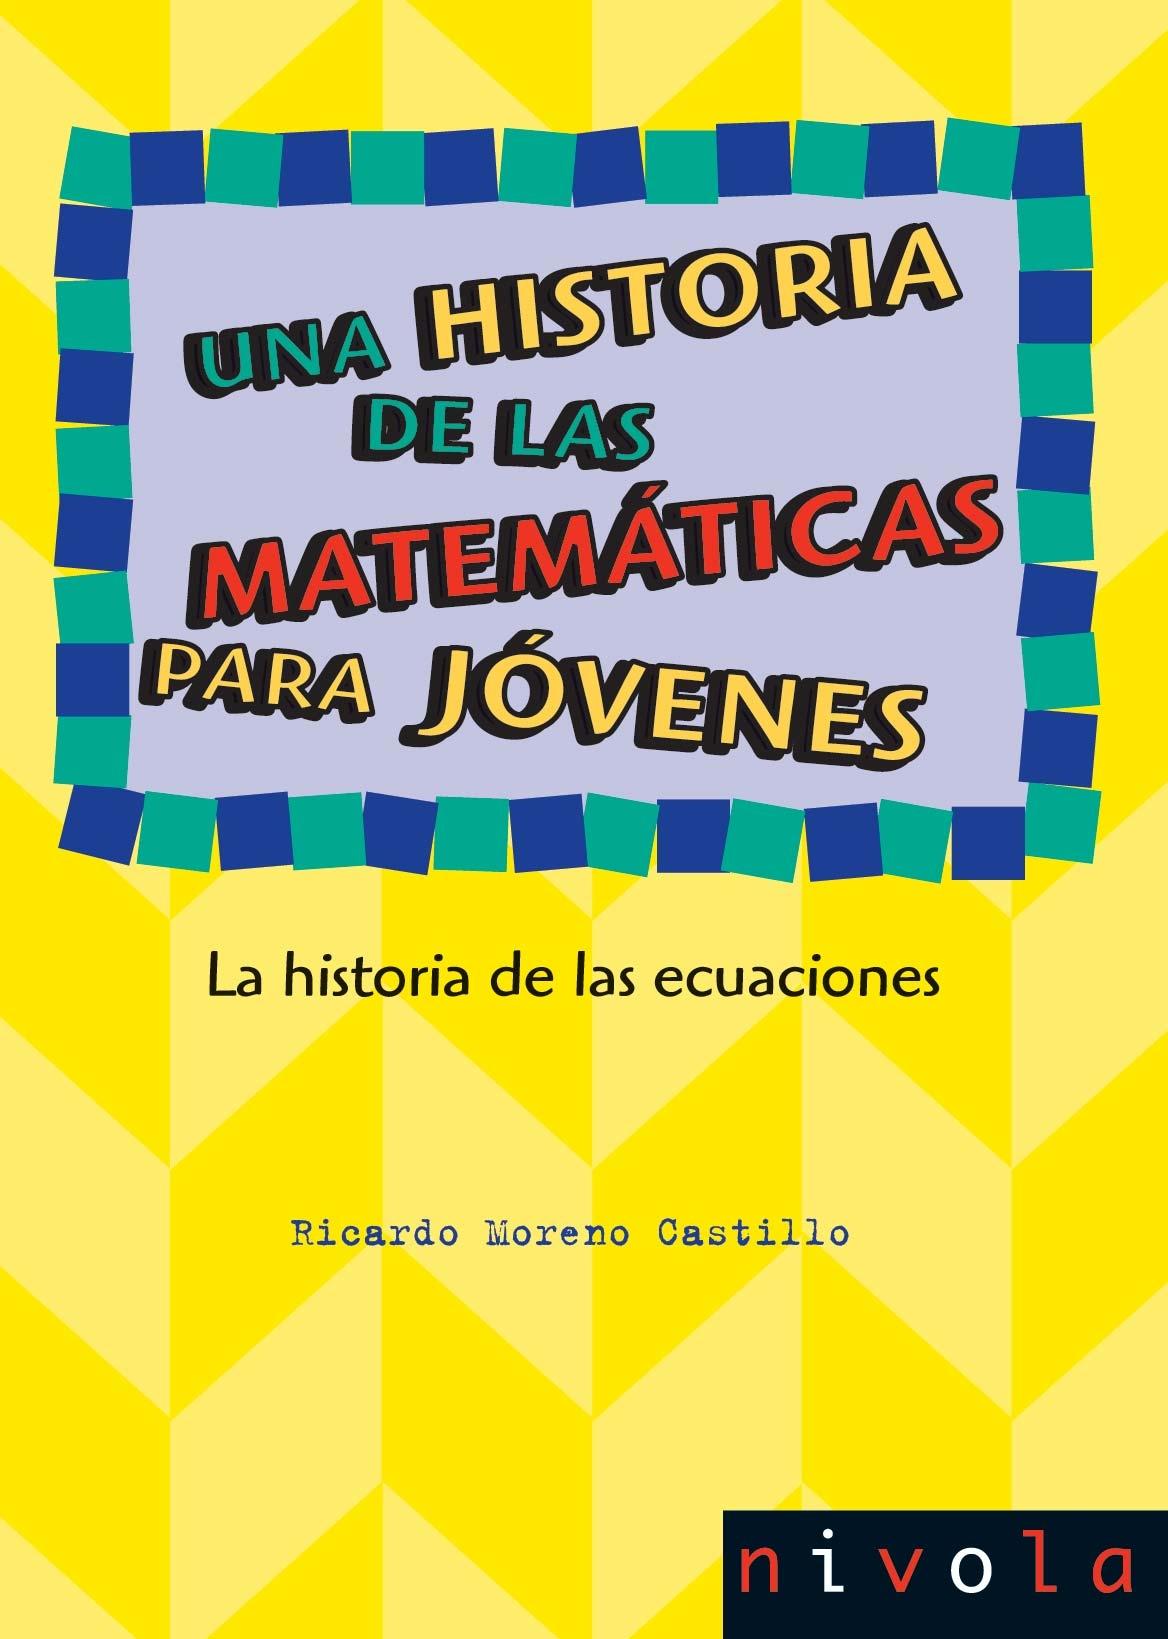 Una historia de las matemáticas para jóvenes III "La historia de las ecuaciones"